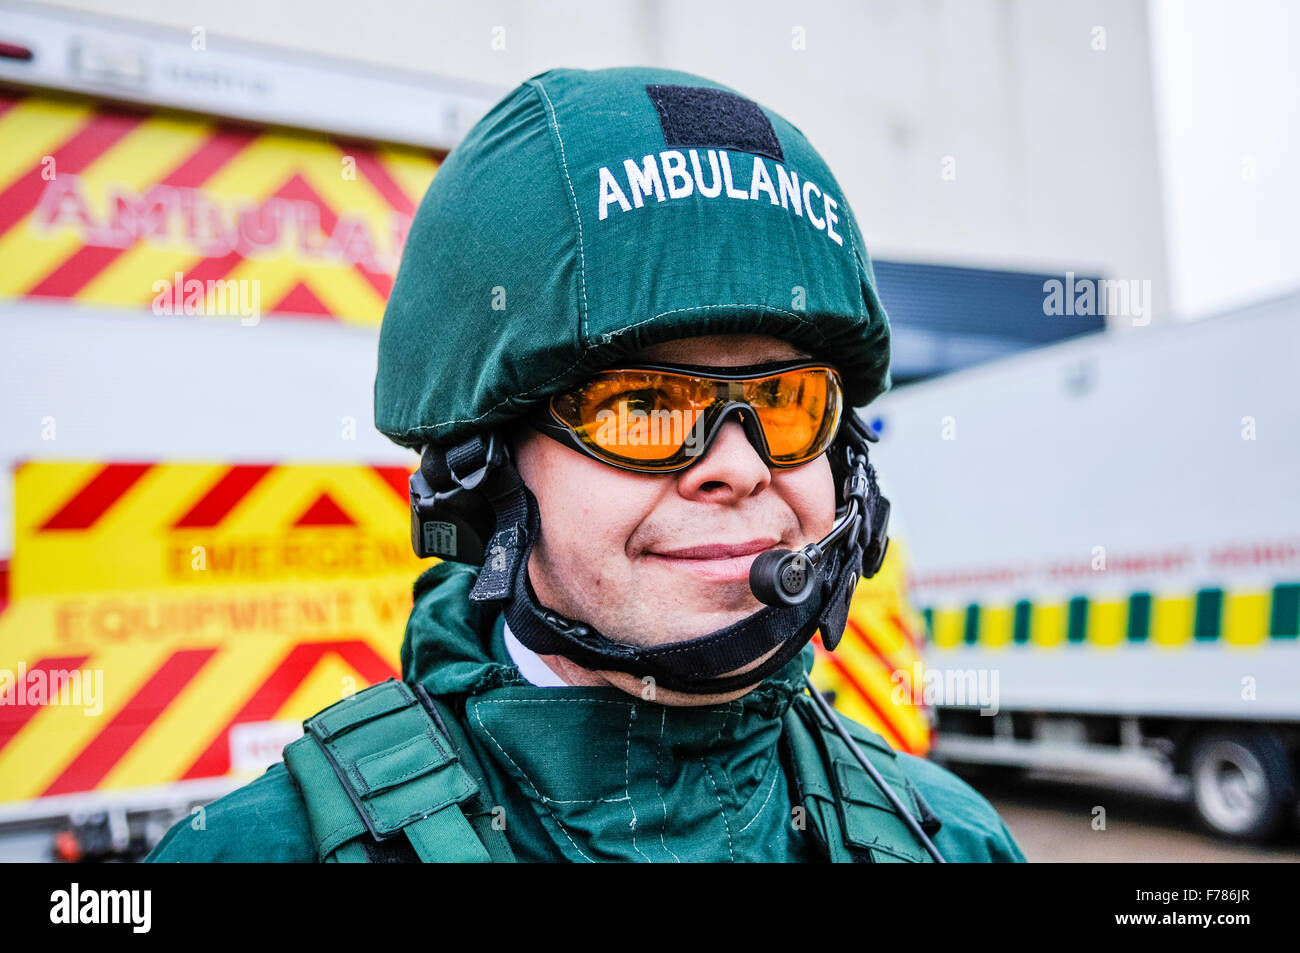 L'Irlande du Nord. 26 novembre, 2015. Un ambulancier dans le cadre de l' ambulance national du Royaume-Uni Resiliance (SSEAN) Équipe d'intervention  en zone dangereuse (HART) porte des lunettes de protection balistique, gilet,  casque